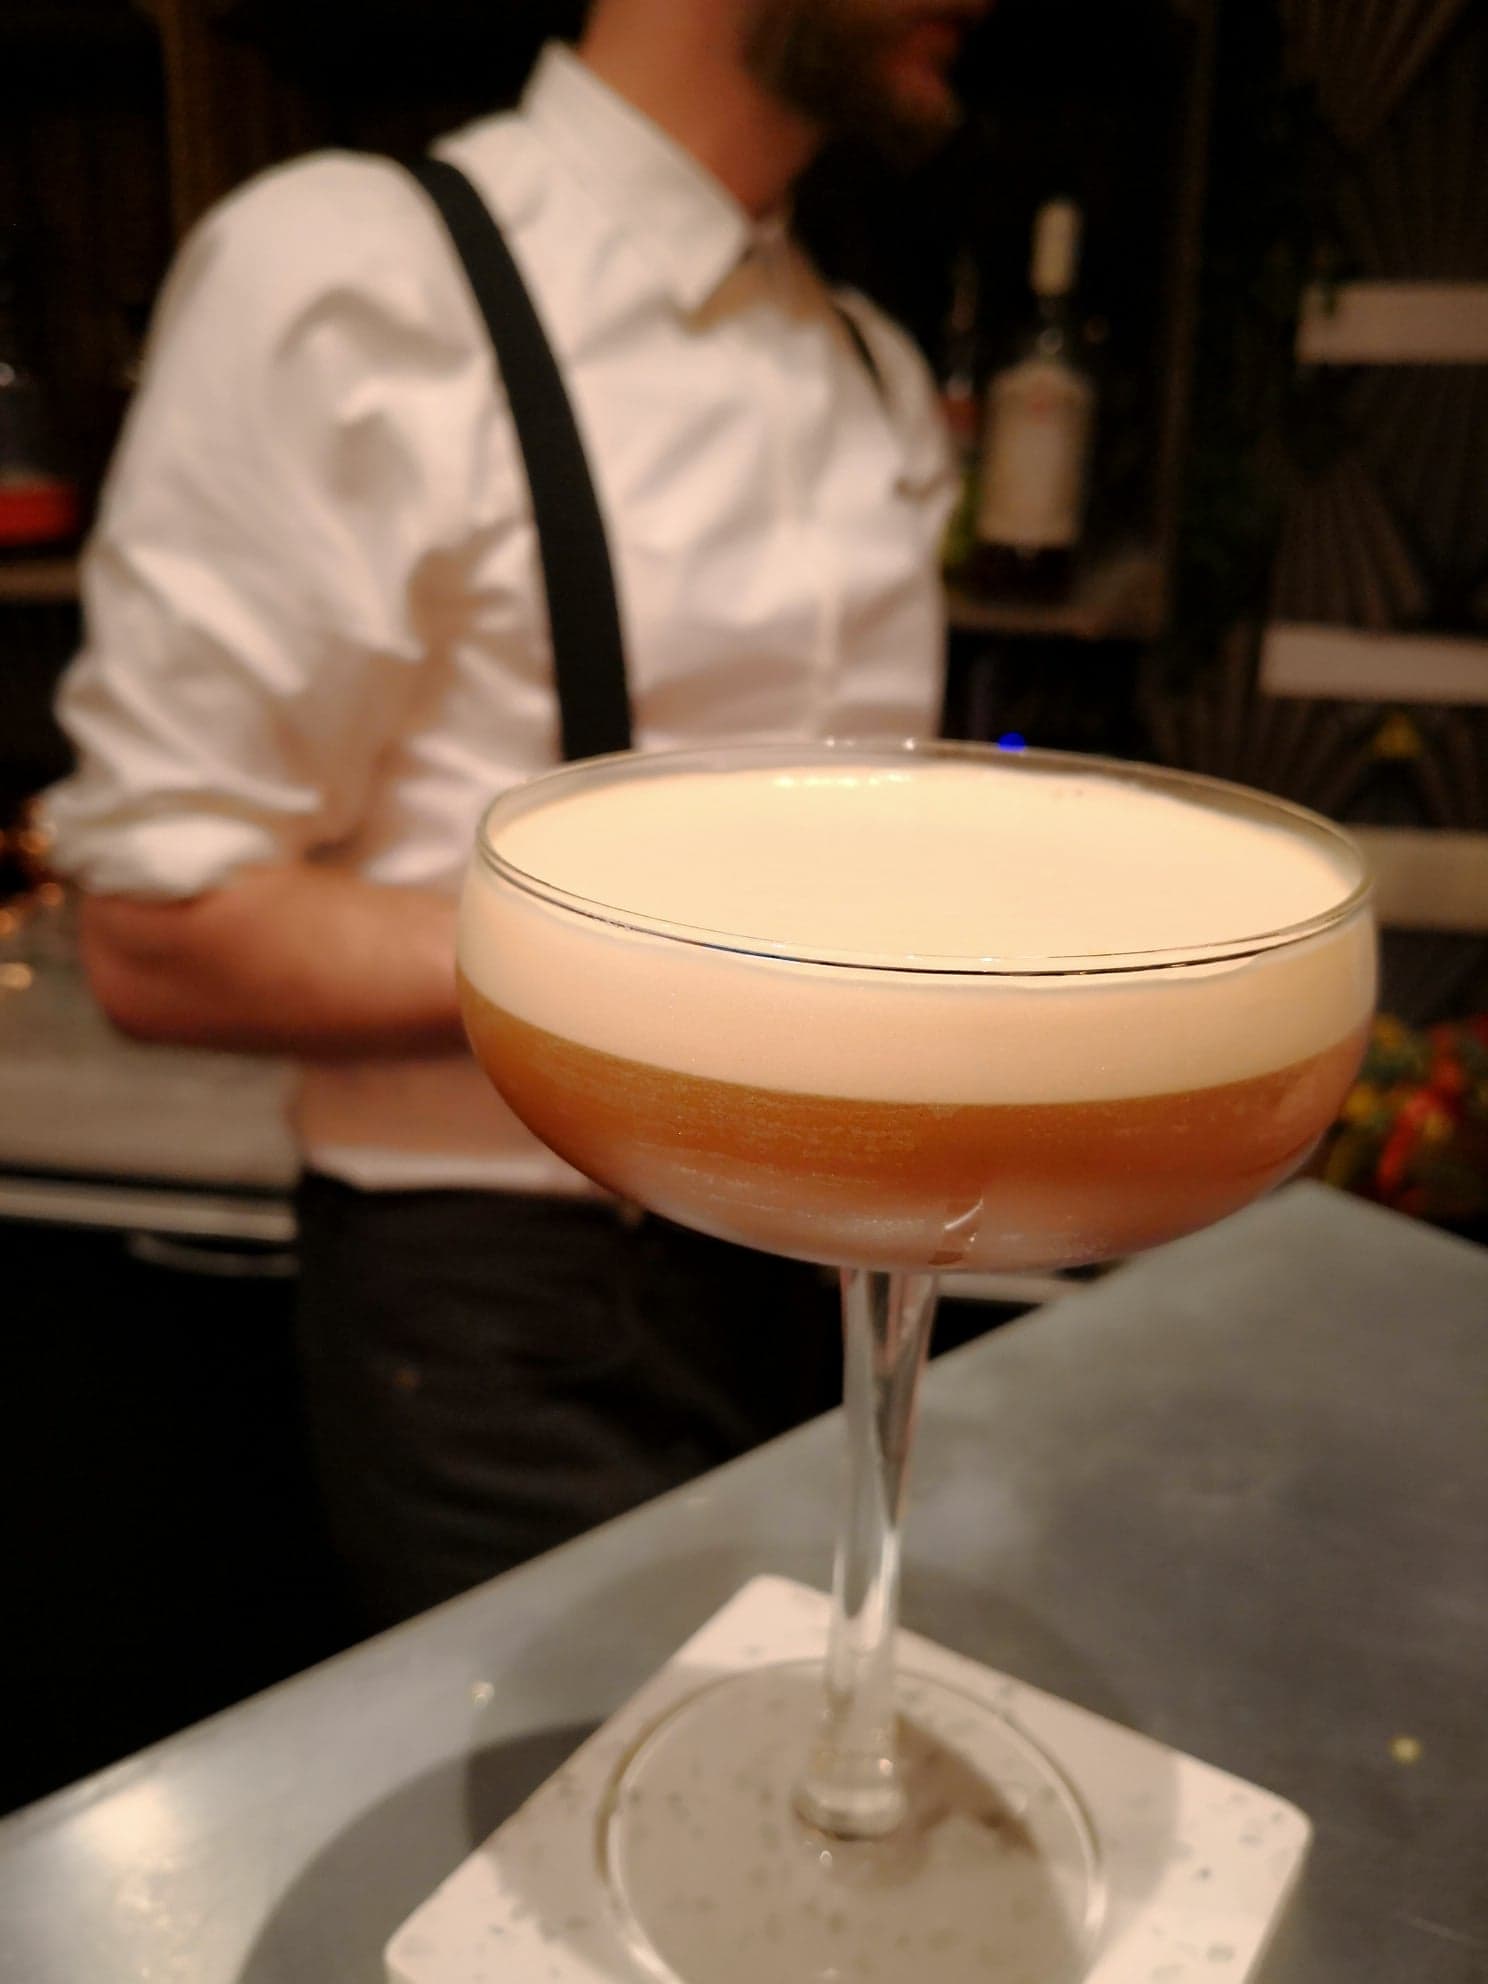 Ethylo - Bar à cocktails